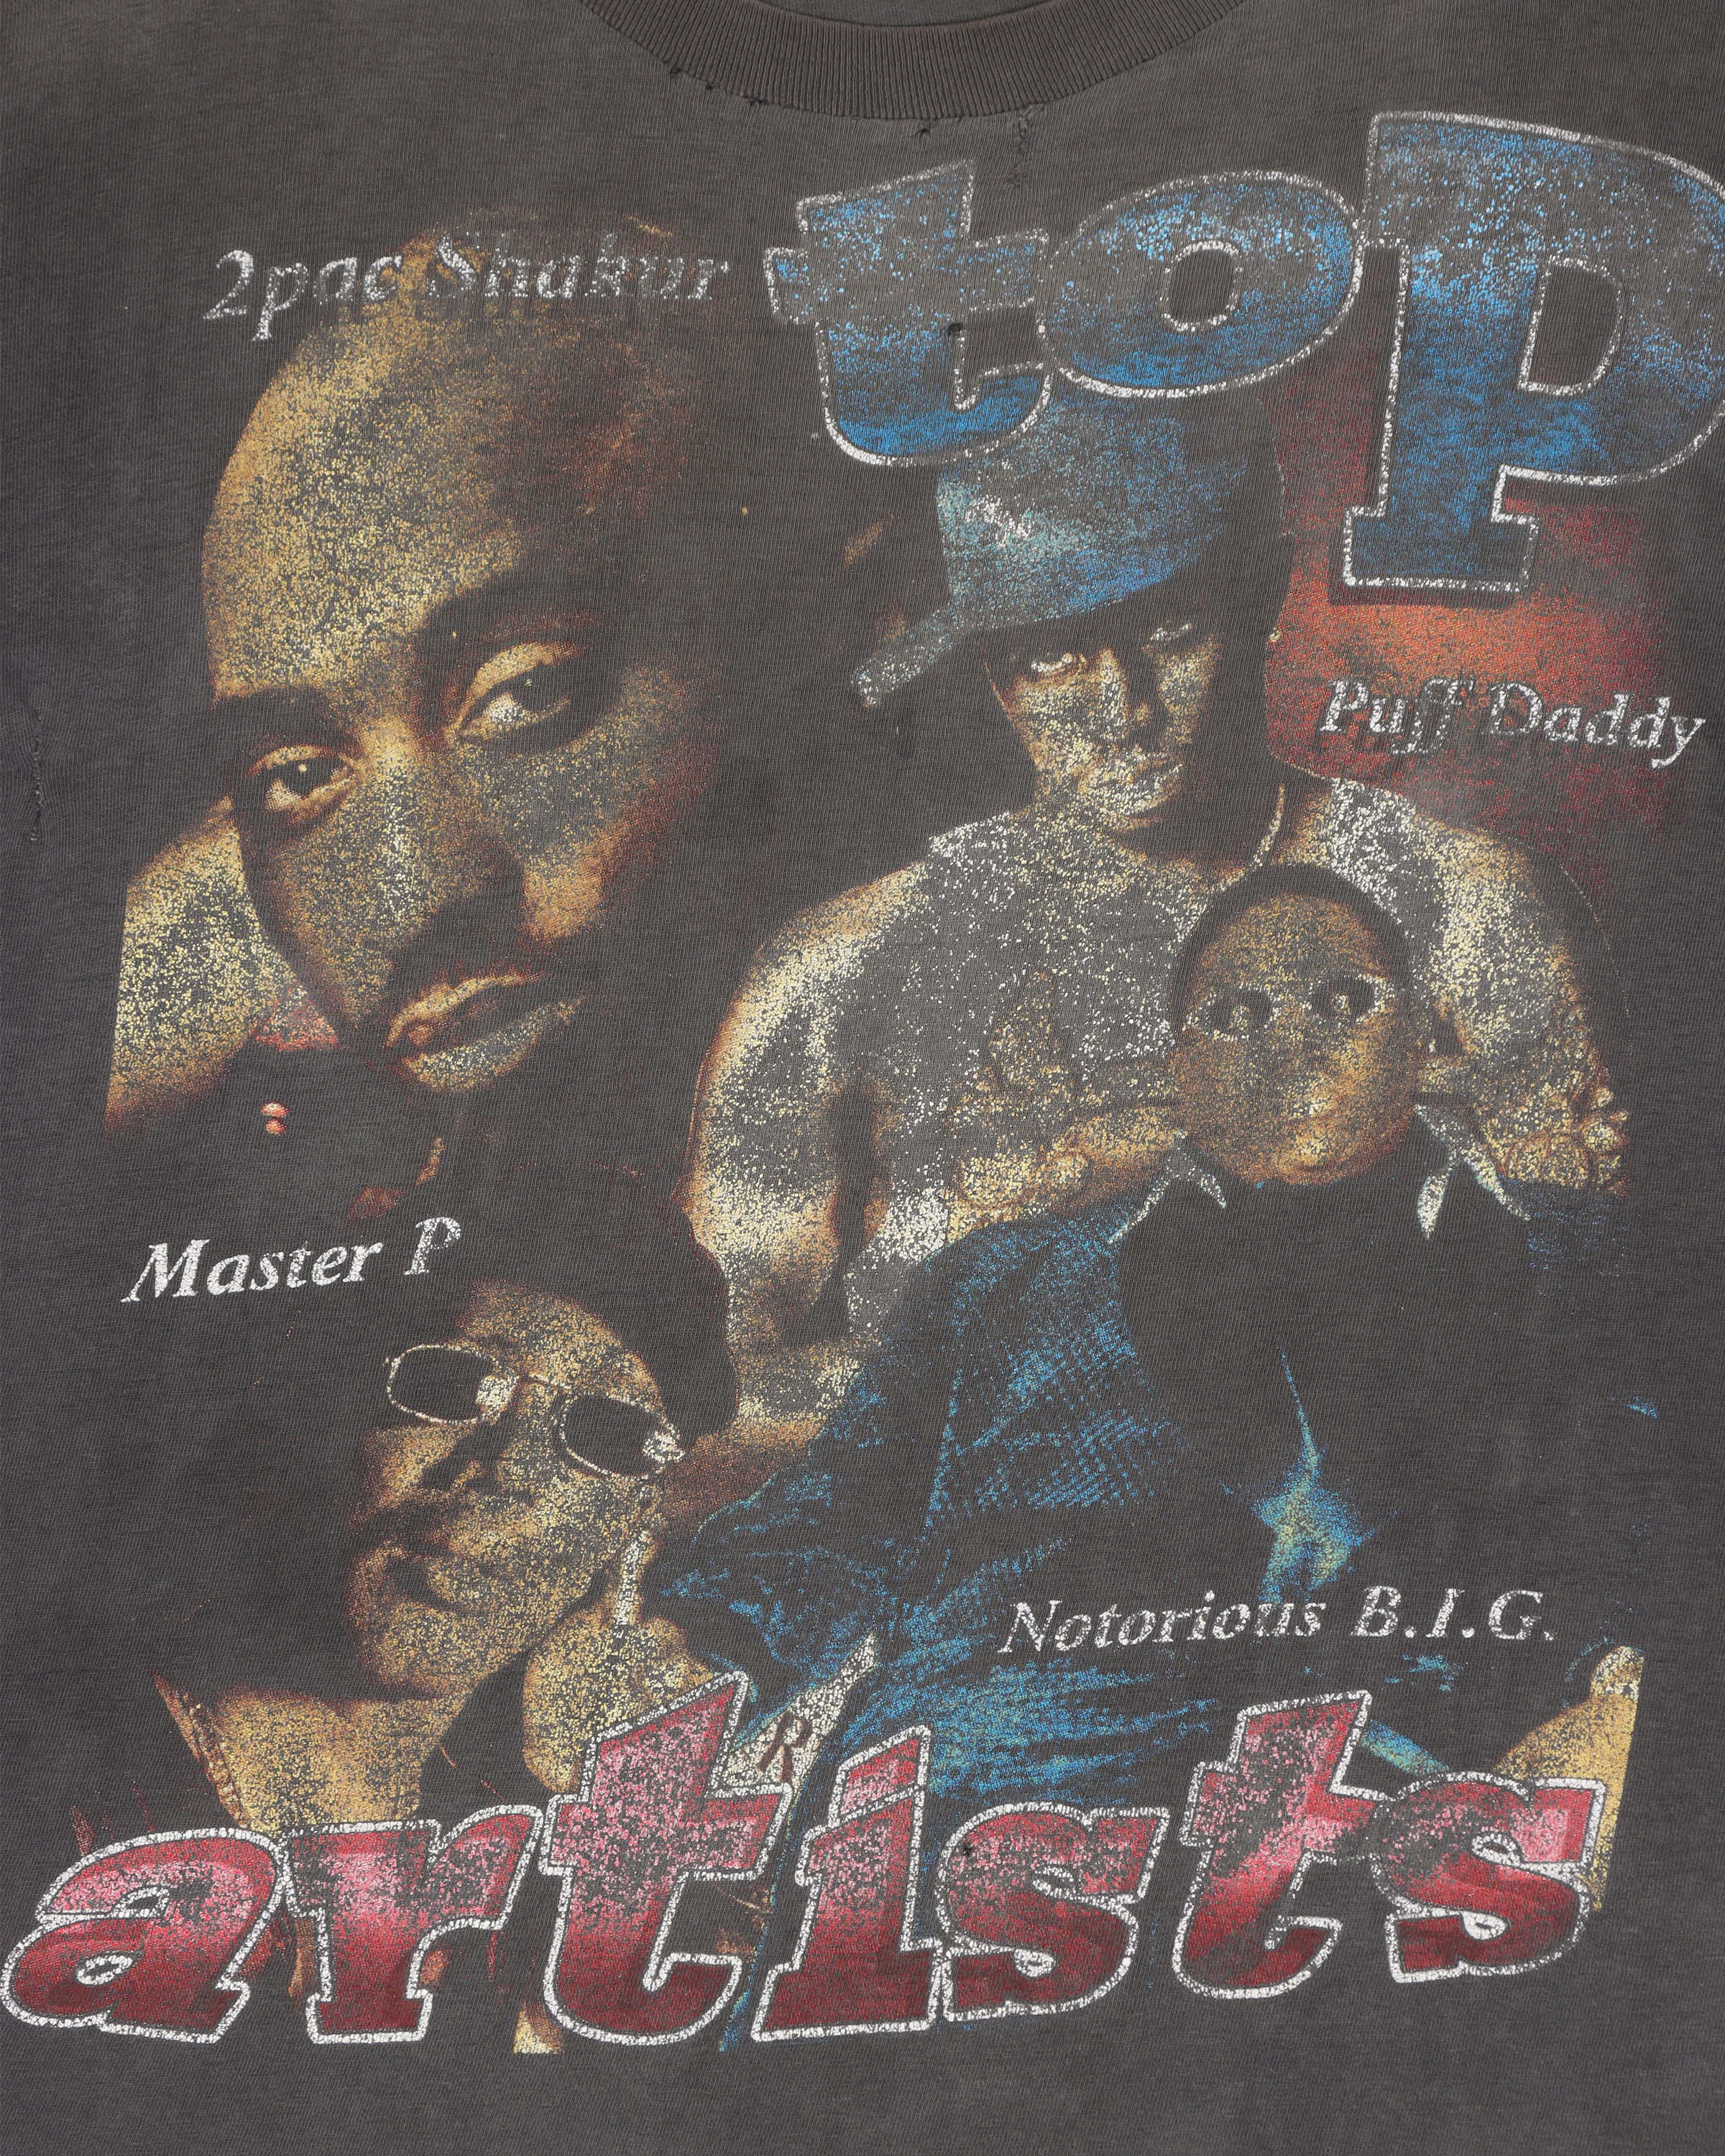 1990's Top Artists Bootleg Rap & Hip-Hop Graphic Print T-Shirt